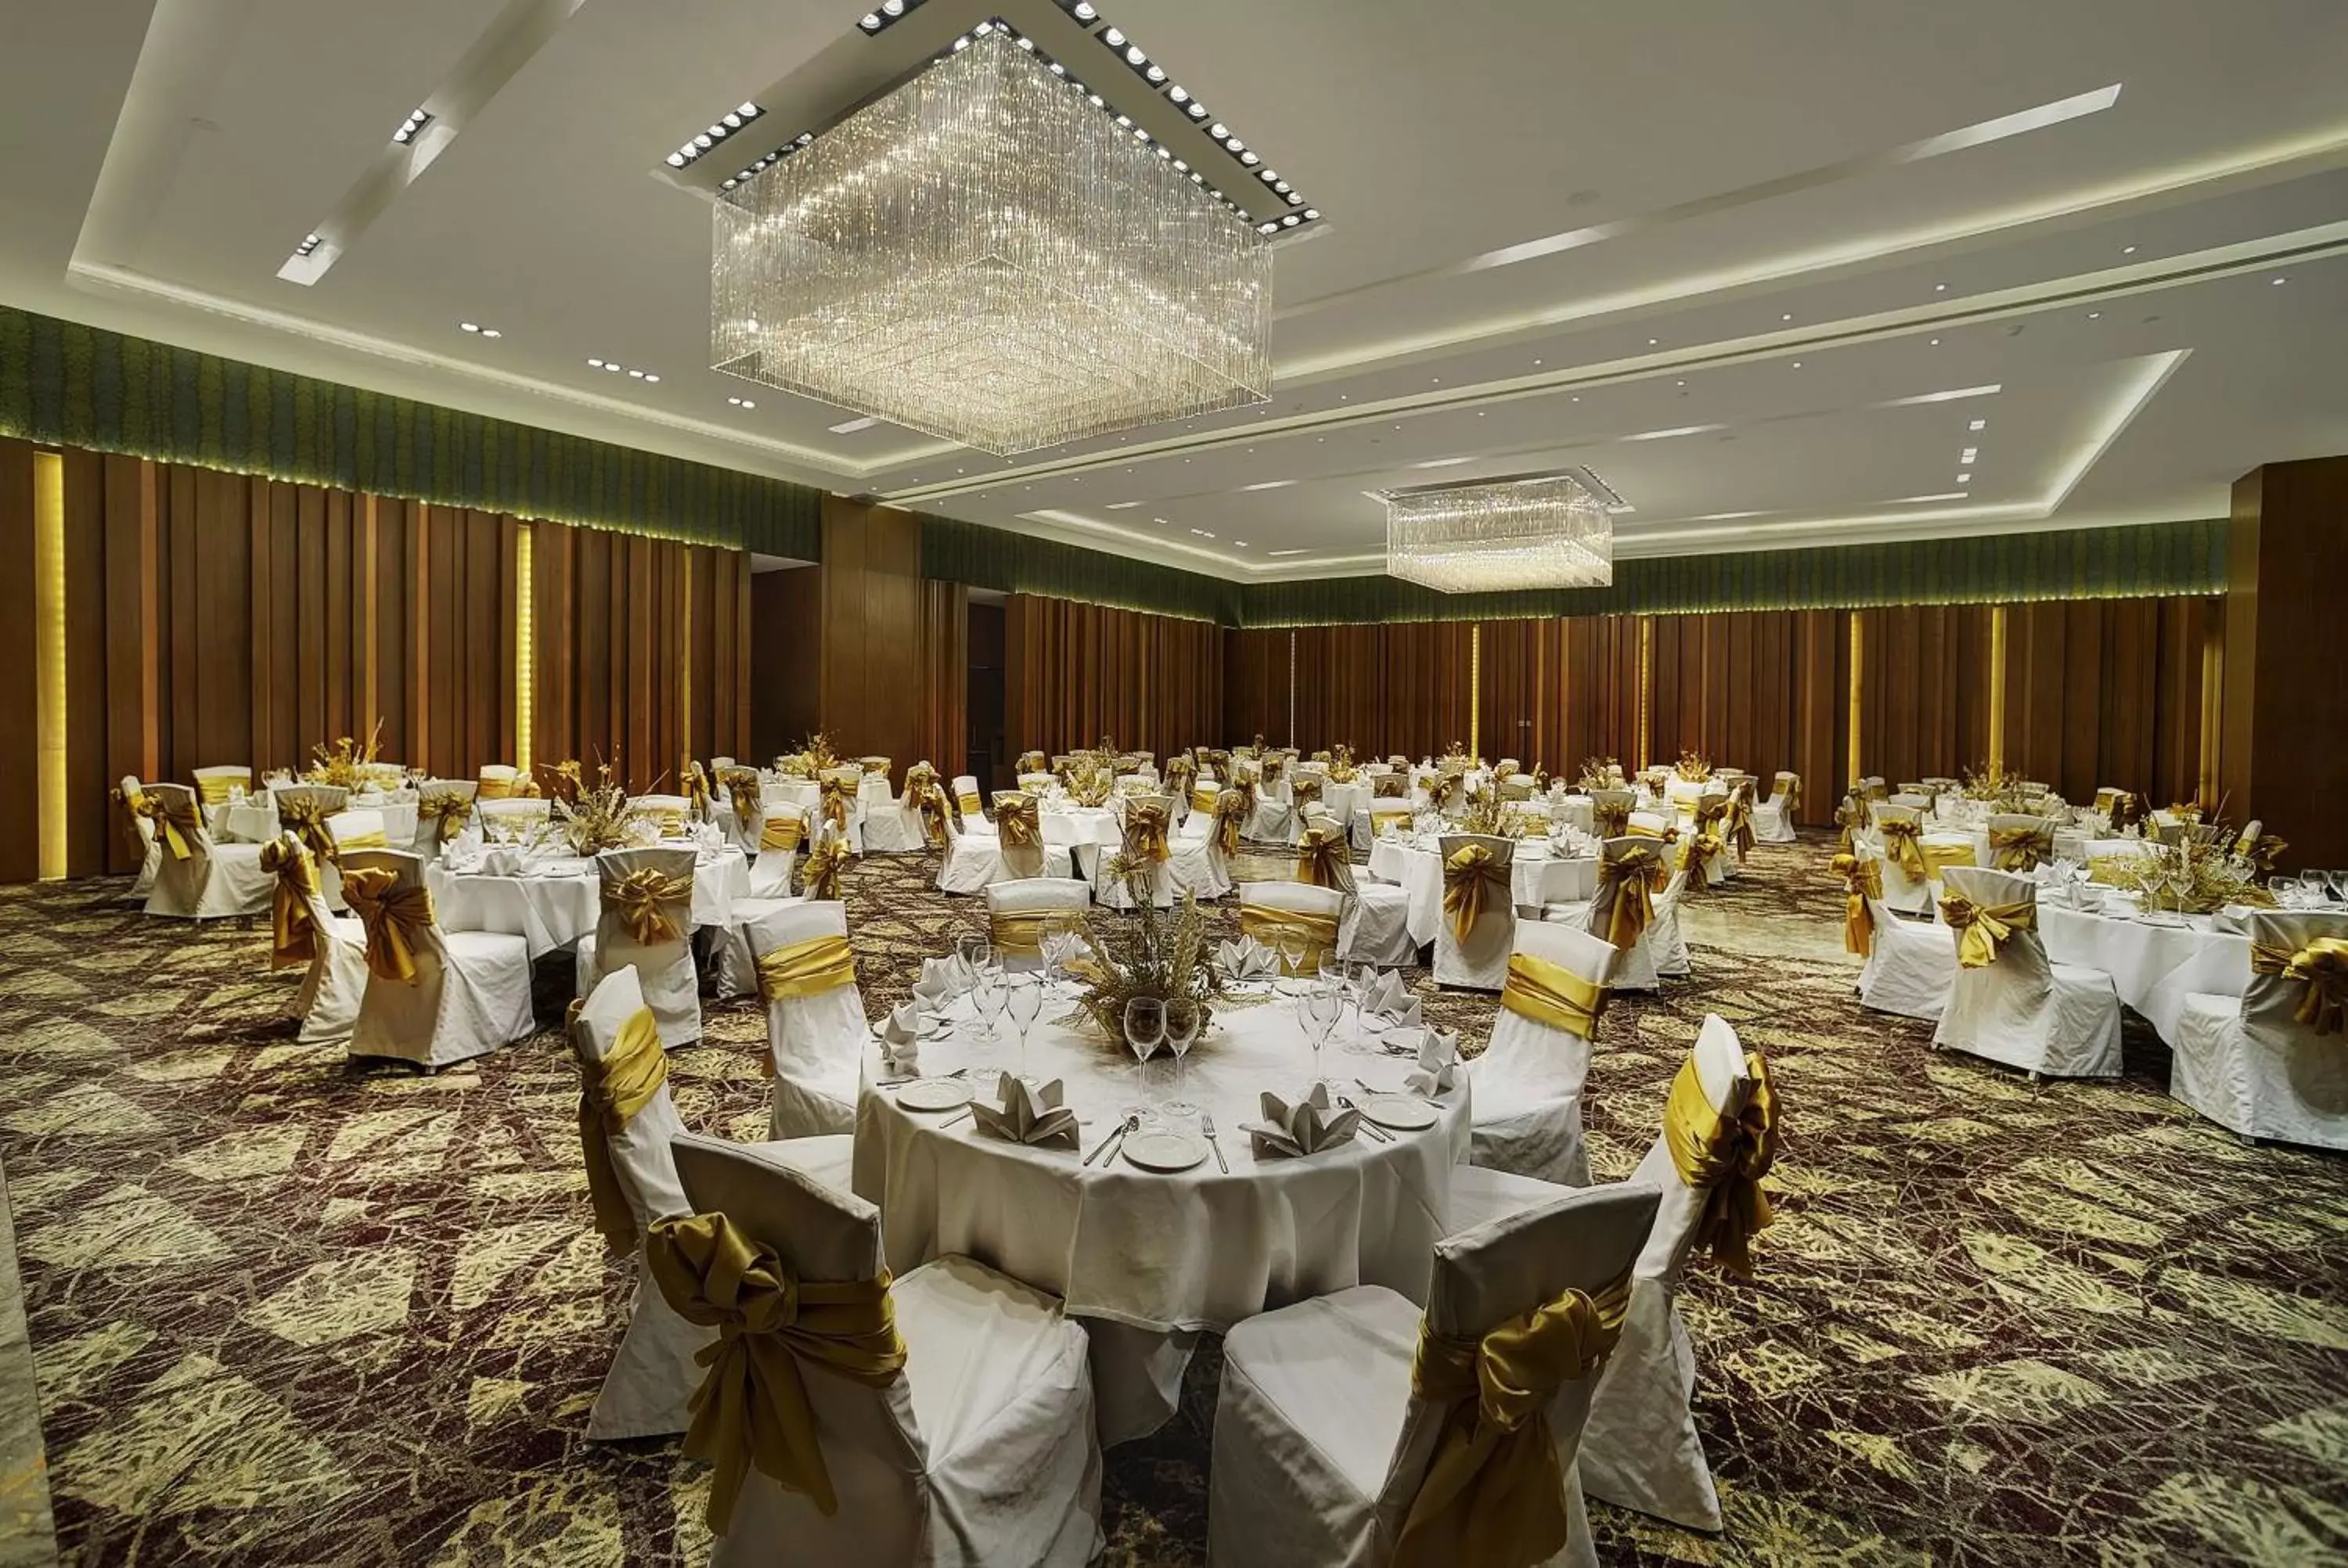 Lobby or reception, Banquet Facilities in Hyatt Regency Amritsar